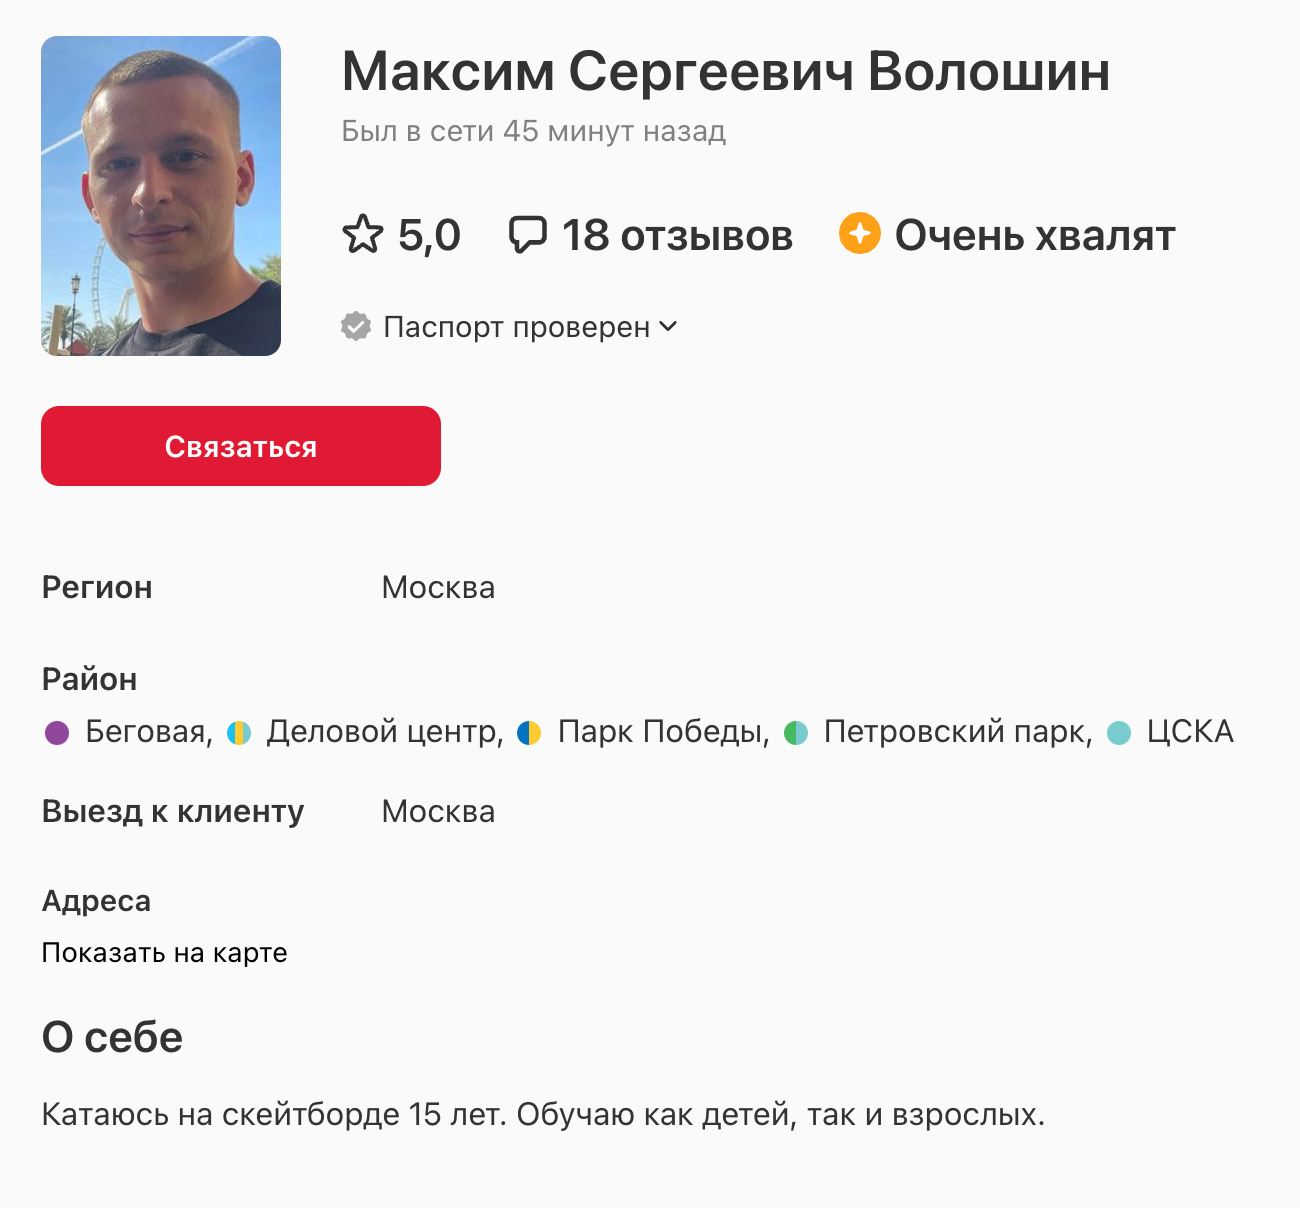 Профиль моего приятеля на «Профи-ру». Он хороший тренер. Источник: profi.ru